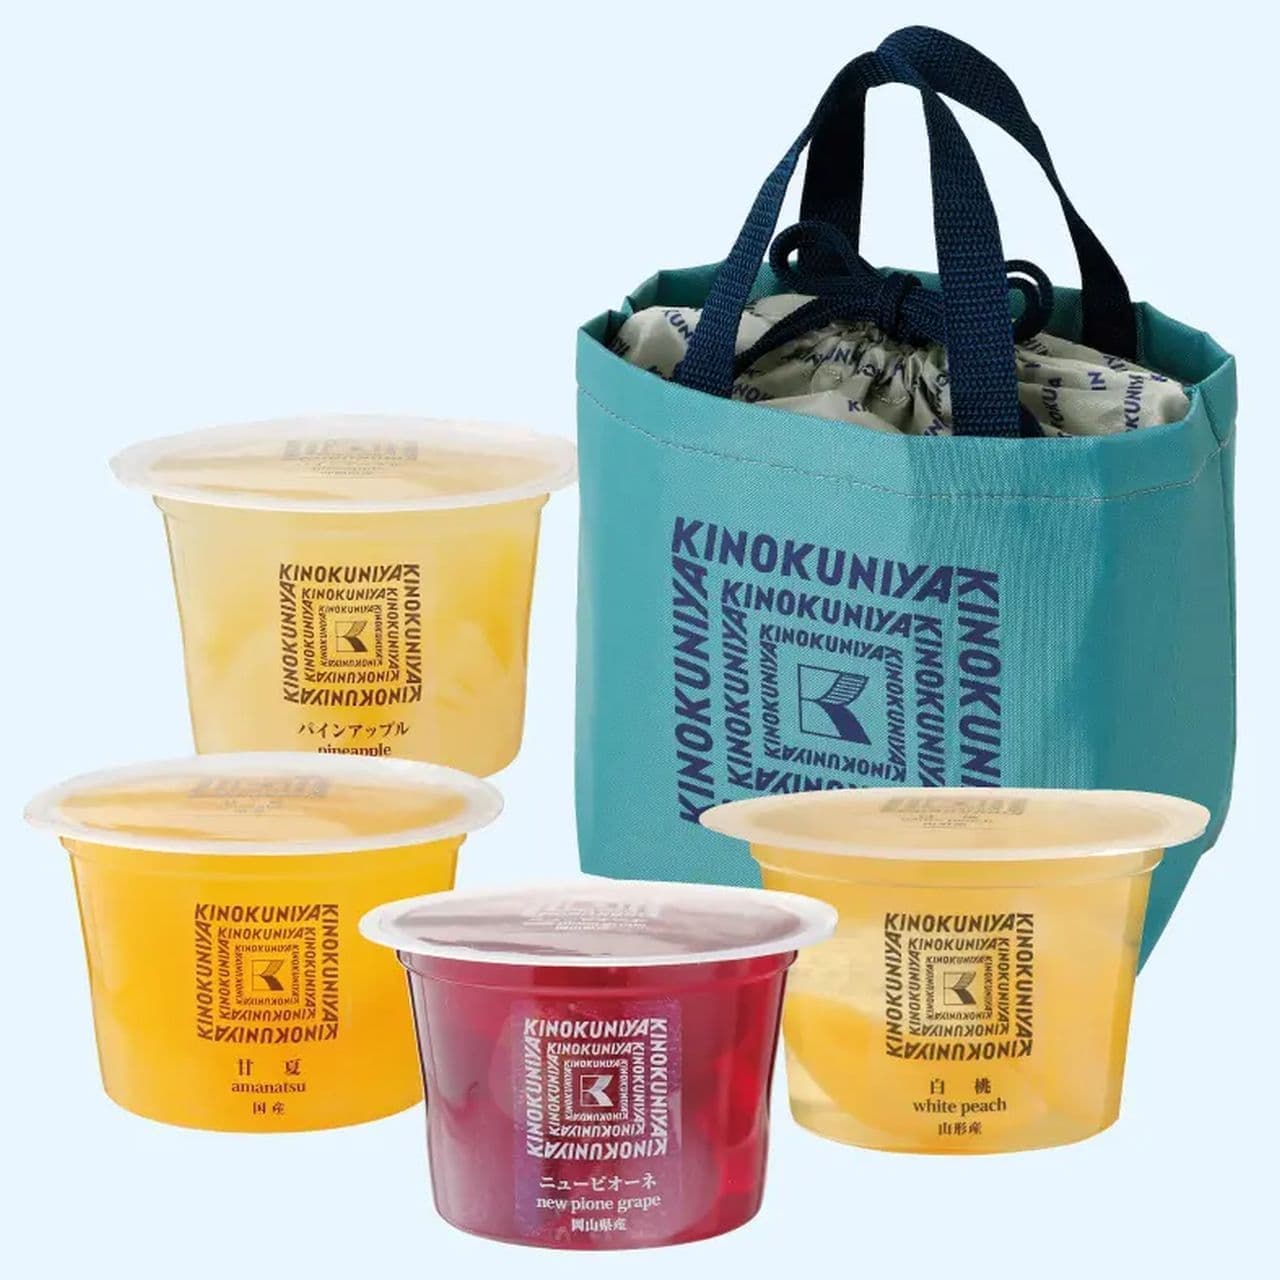 KINOKUNIYA "Jelly Set with Cooling Bag